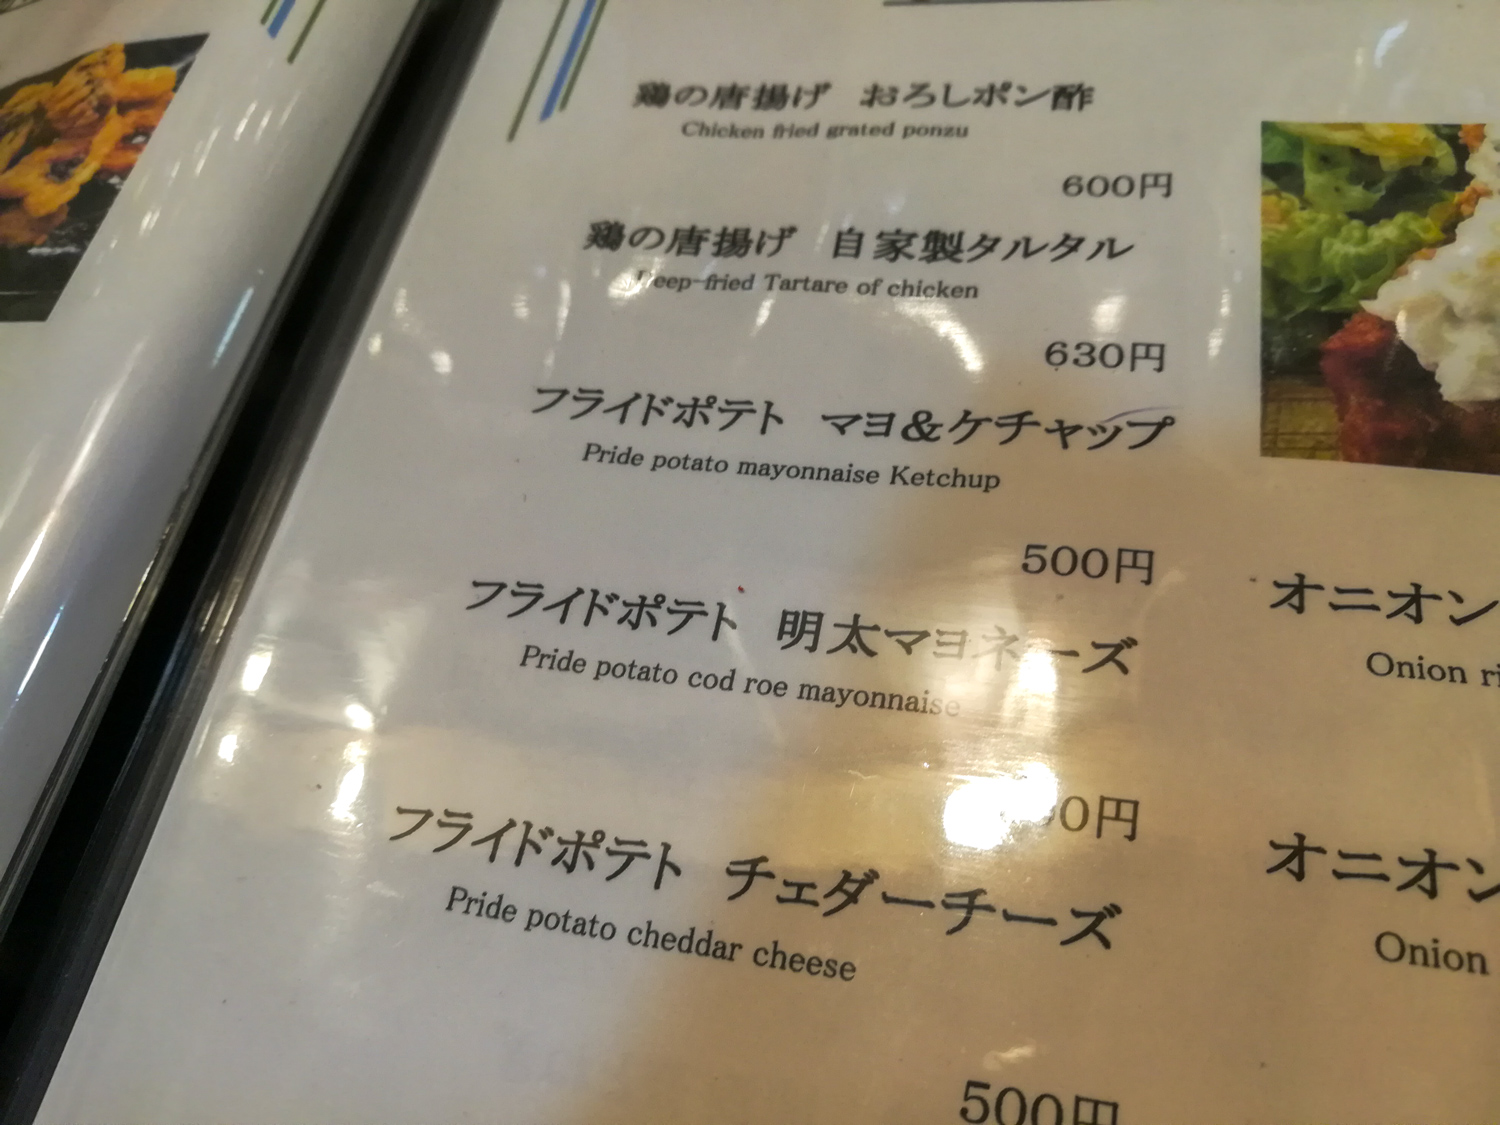 Speisekarte mit komischer Übersetzung